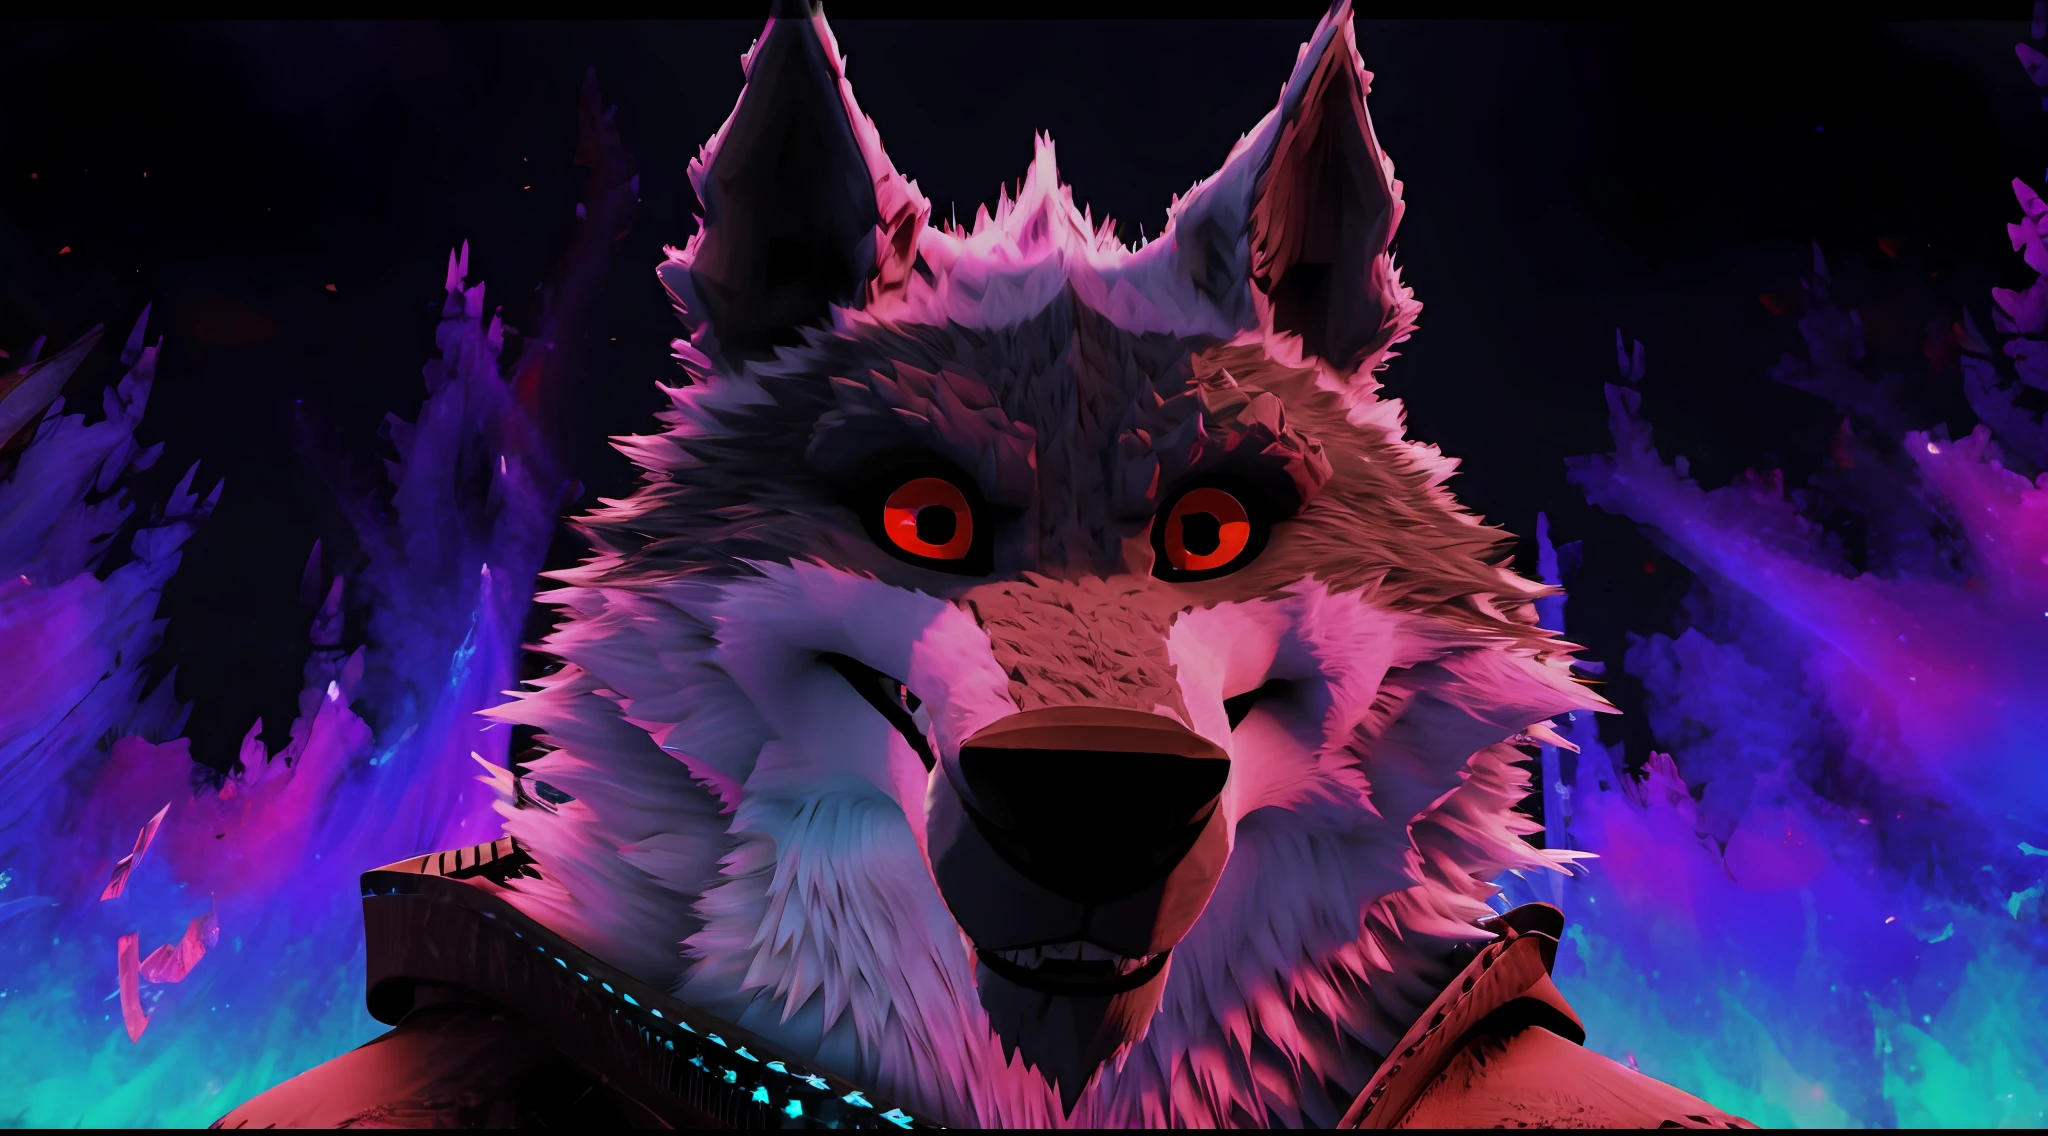 ภาพหน้าปก Death Wolf มองผู้ชมอย่างจริงจังและด้วยความเกลียดชังอย่างมากในดวงตาสีแดงและสีเข้ม 3D ULTRA HD 8K